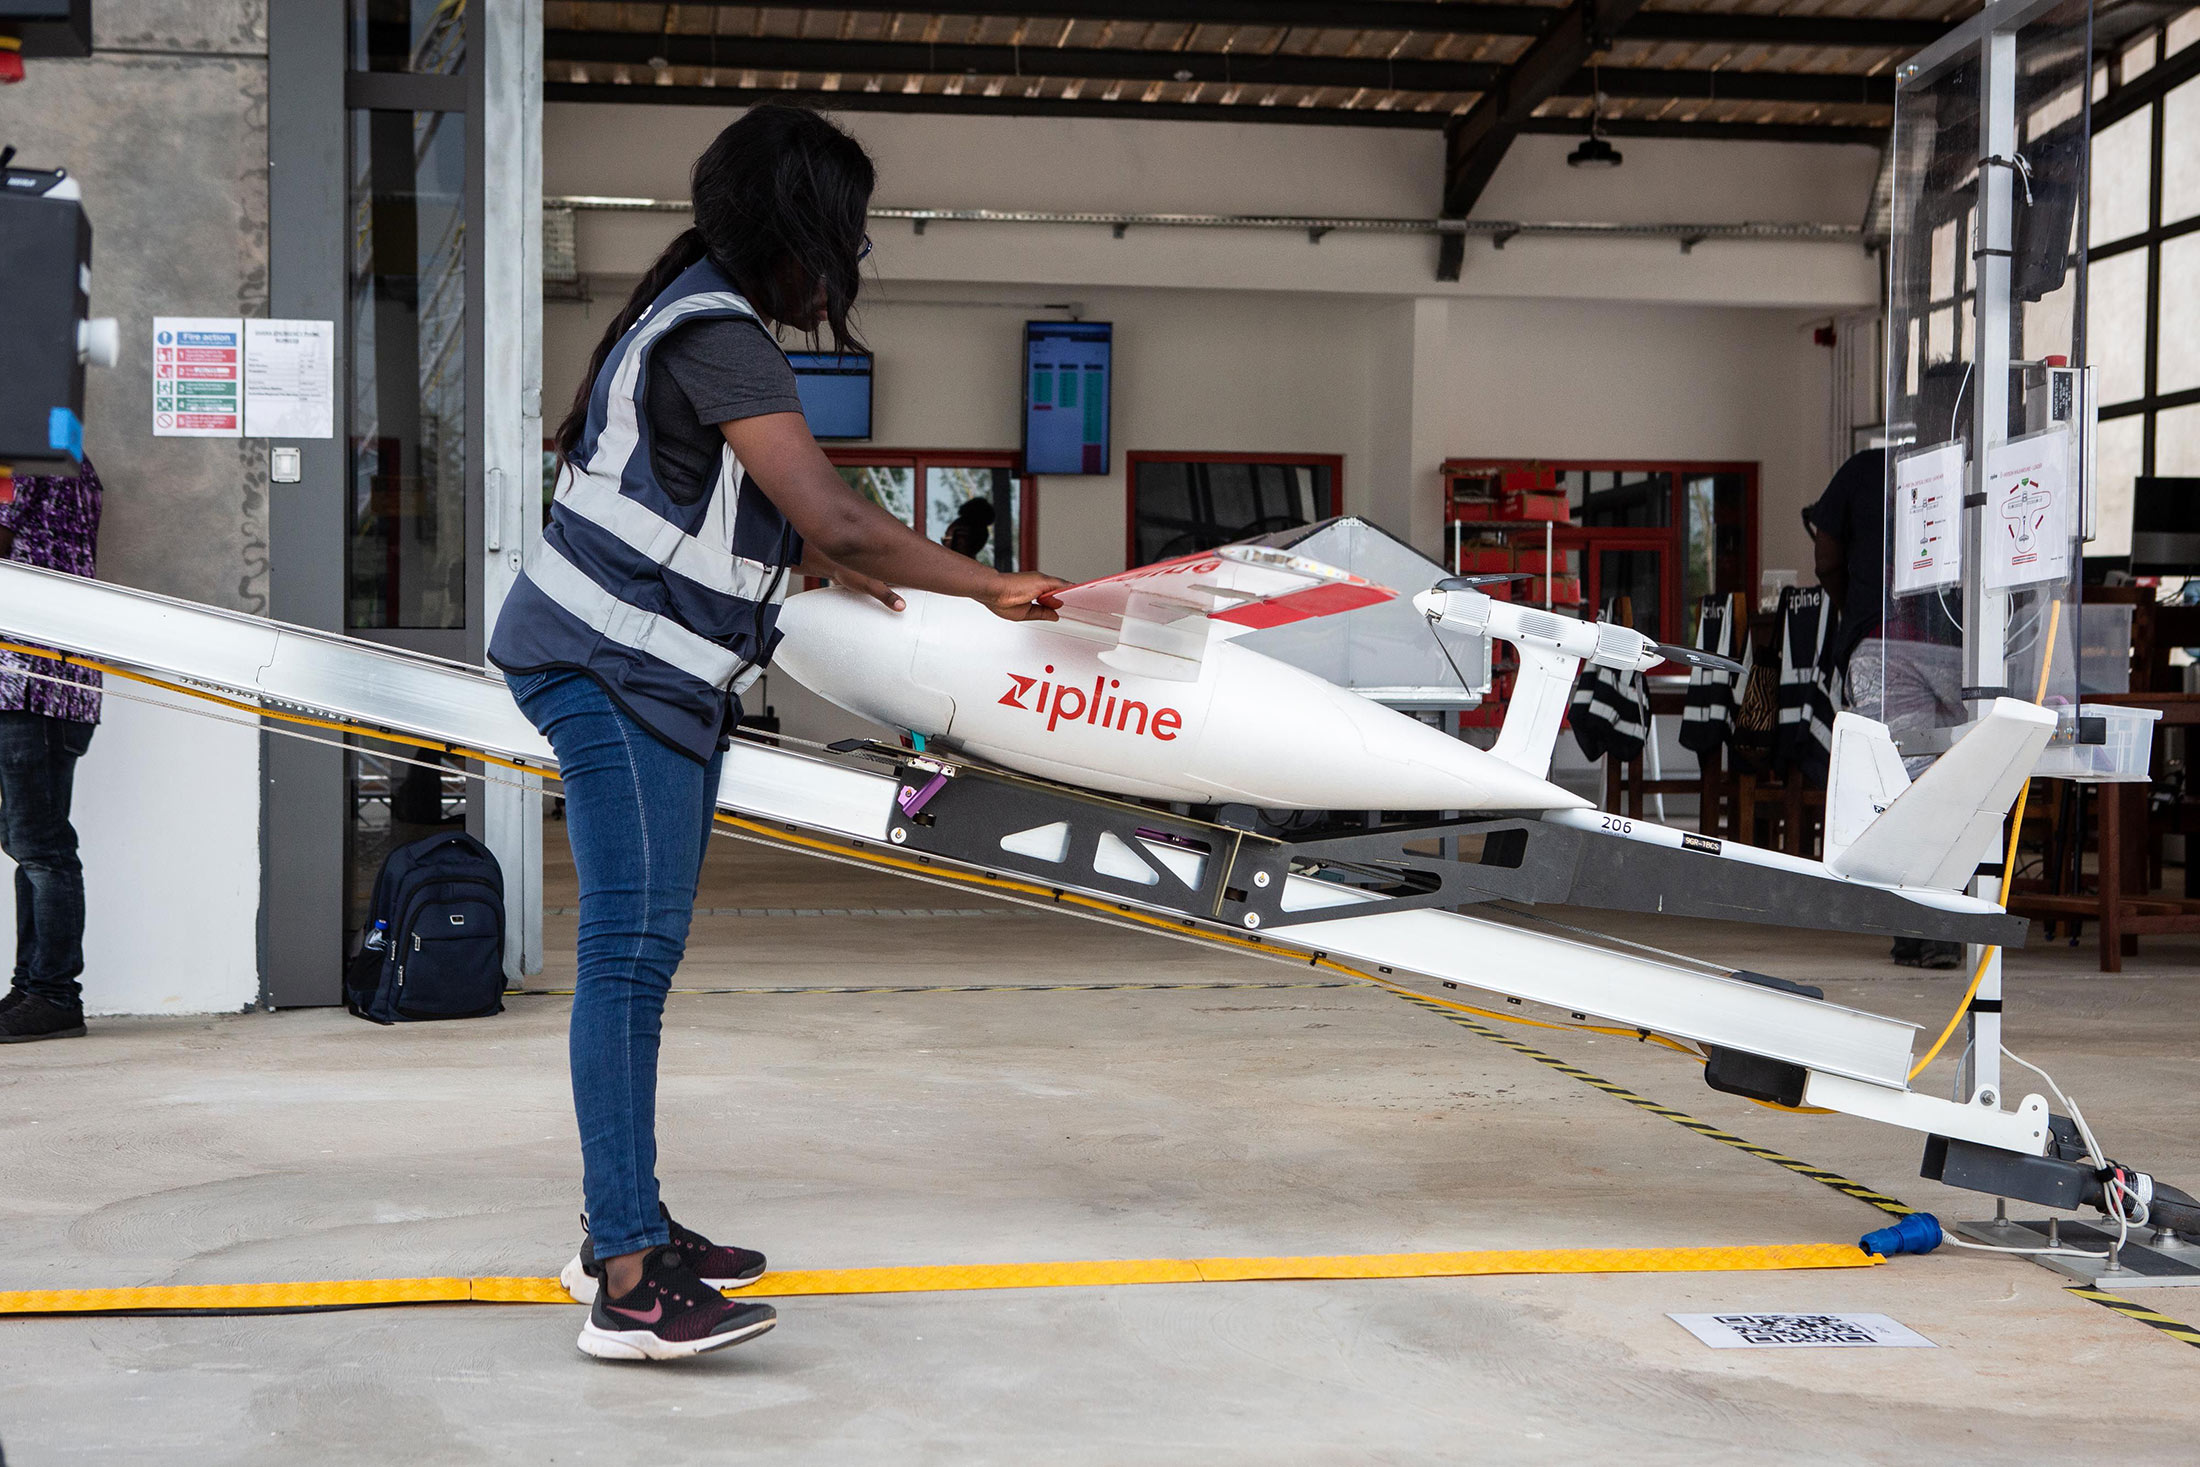 Zipline’s Drones Reach 1 Million Deliveries, Plans Expansion into Food Service